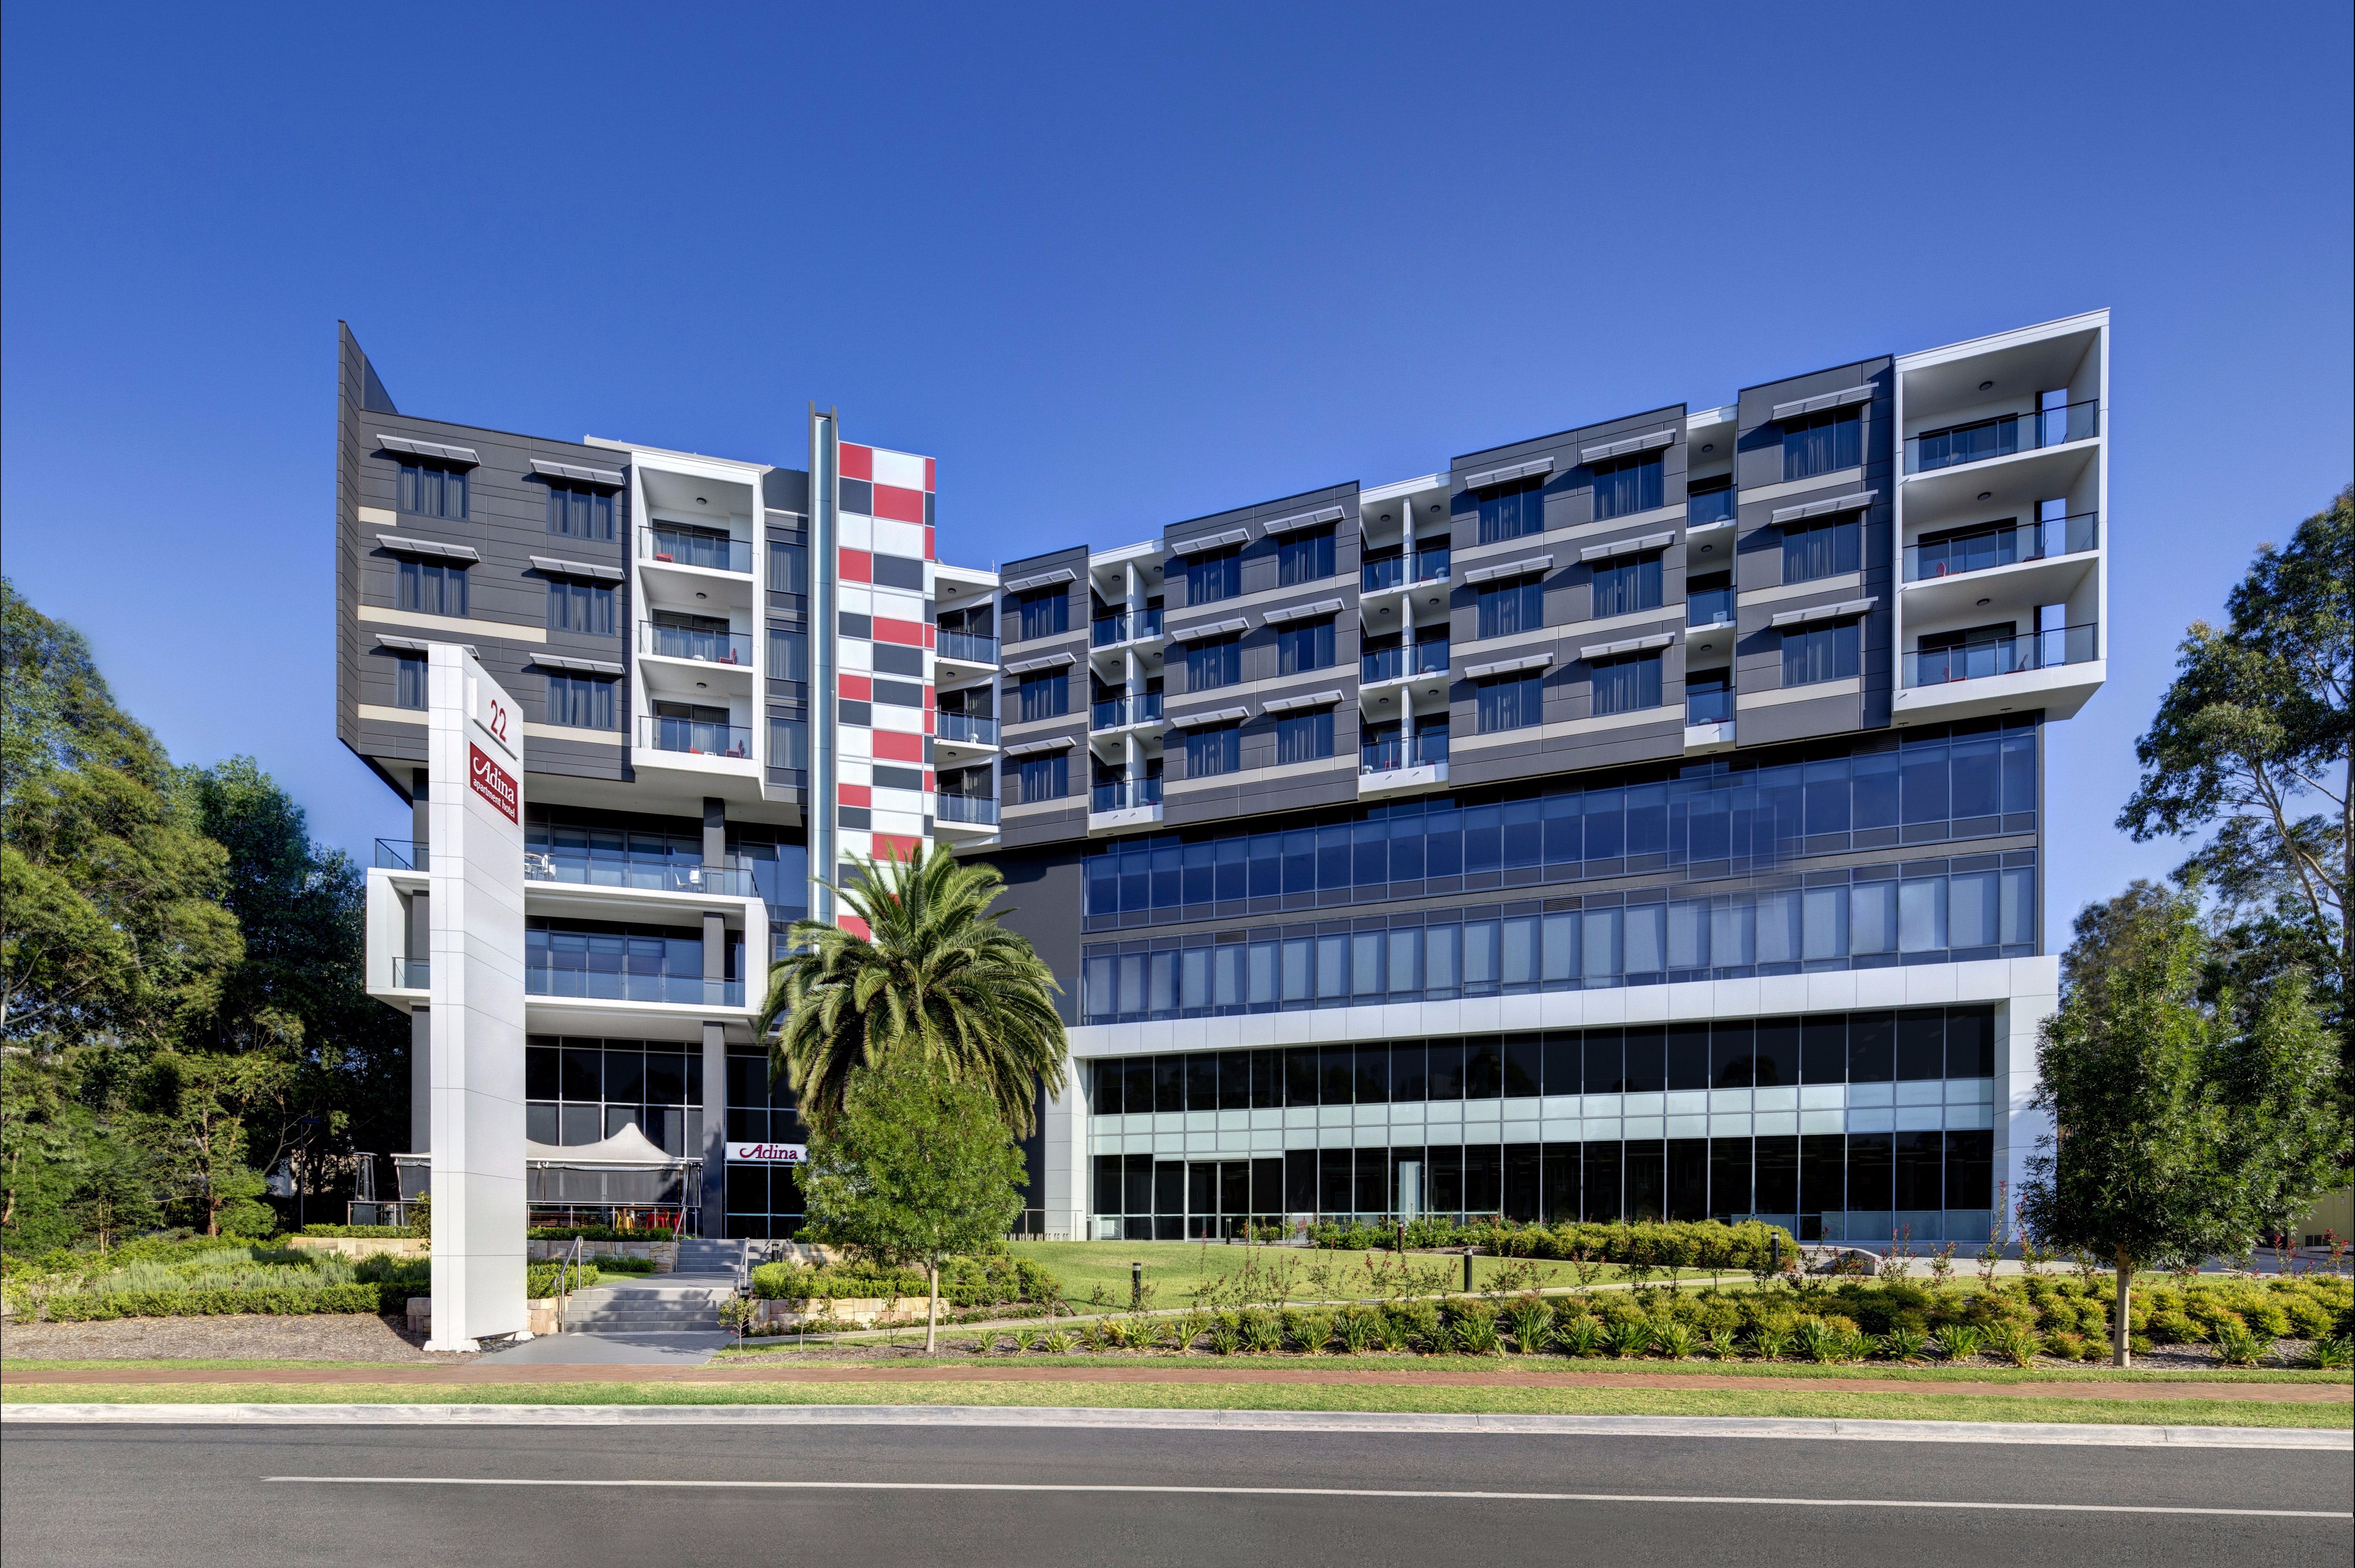 Adina Apartment Hotel Norwest Sydney - Perisher Accommodation